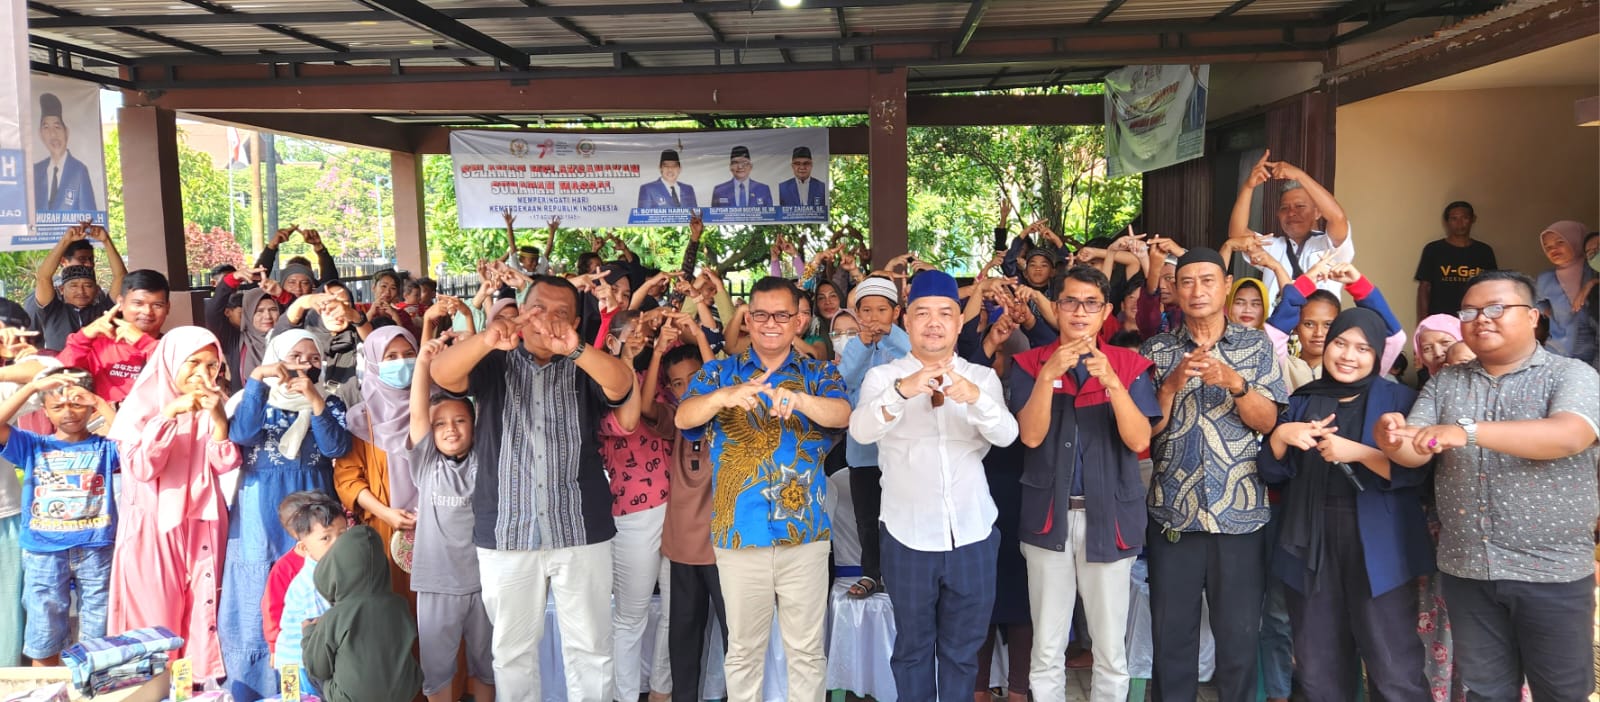 Anggota DPRD Kota Pontianak, Zulfydar Zaidar Mochtar foto bersama di sela-sela kegiatan sunatan massal dalam rangka memeriahkan HUT RI ke-78, di Gang Mursalin, Kecamatan Pontianak Kota, Sabtu (12/08/2023). (Foto: Jauhari)